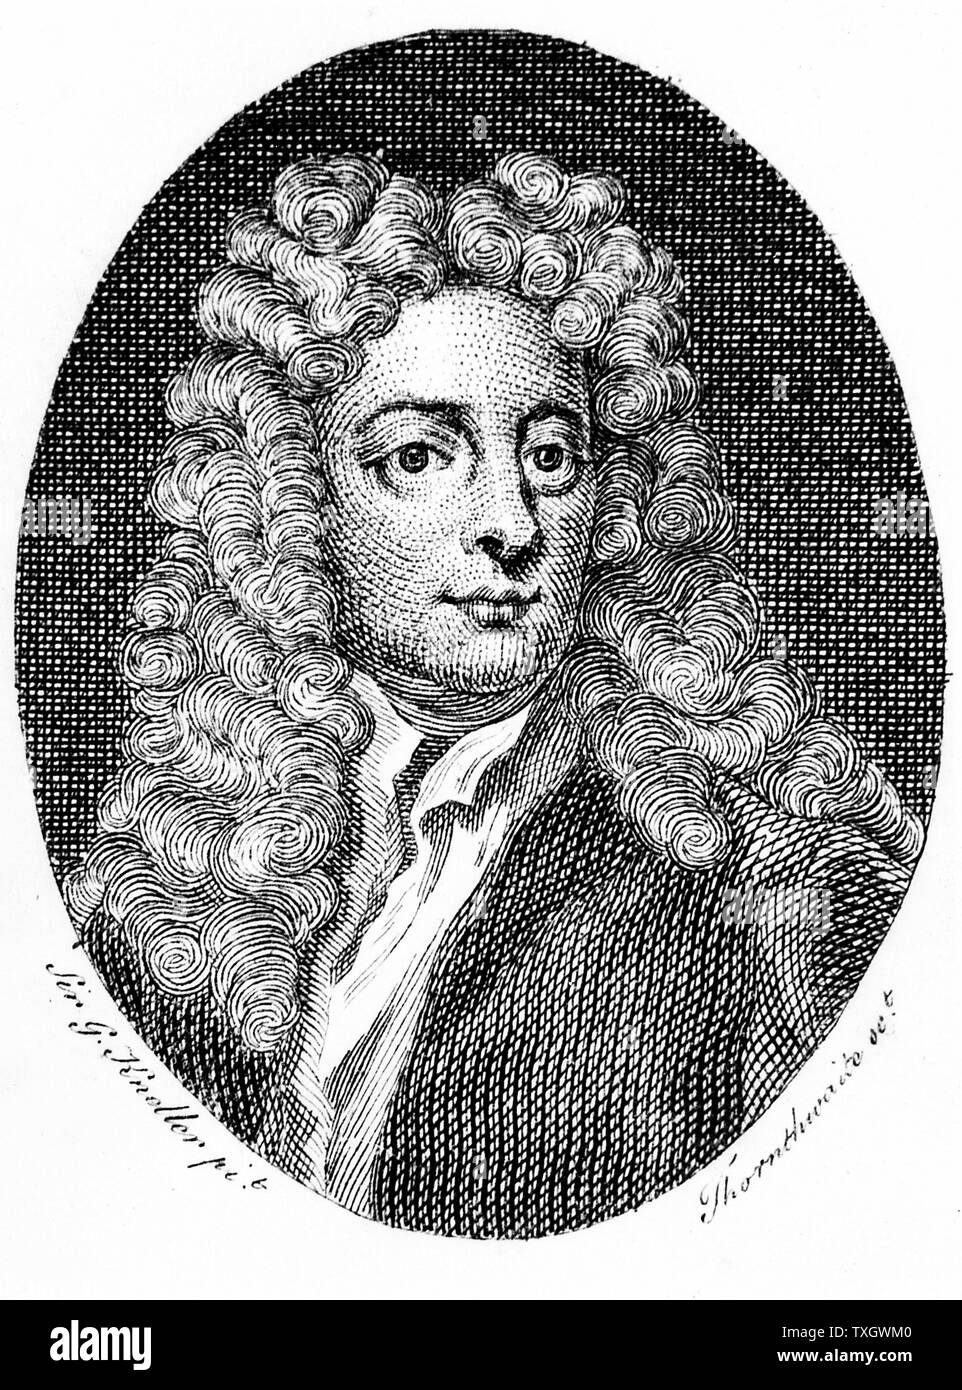 Joseph Addison, anglais essayiste, poète, dramaturge et homme politique. Ami de Richard Steele et Jonathan Swift 1794 gravure sur cuivre Londres Banque D'Images